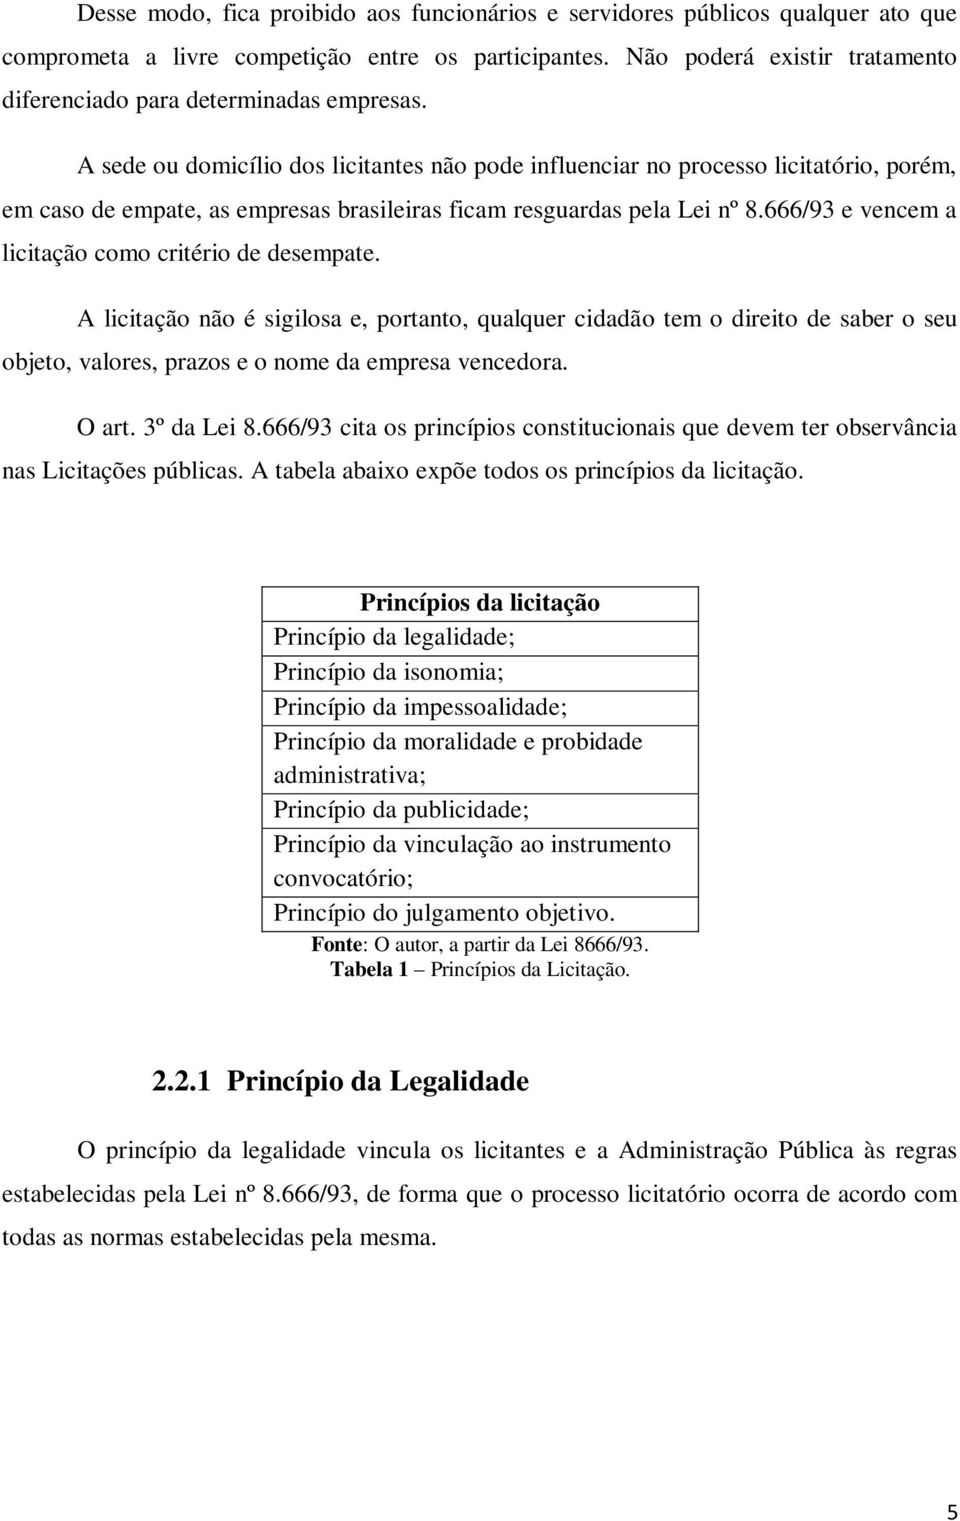 A sede ou domicílio dos licitantes não pode influenciar no processo licitatório, porém, em caso de empate, as empresas brasileiras ficam resguardas pela Lei nº 8.